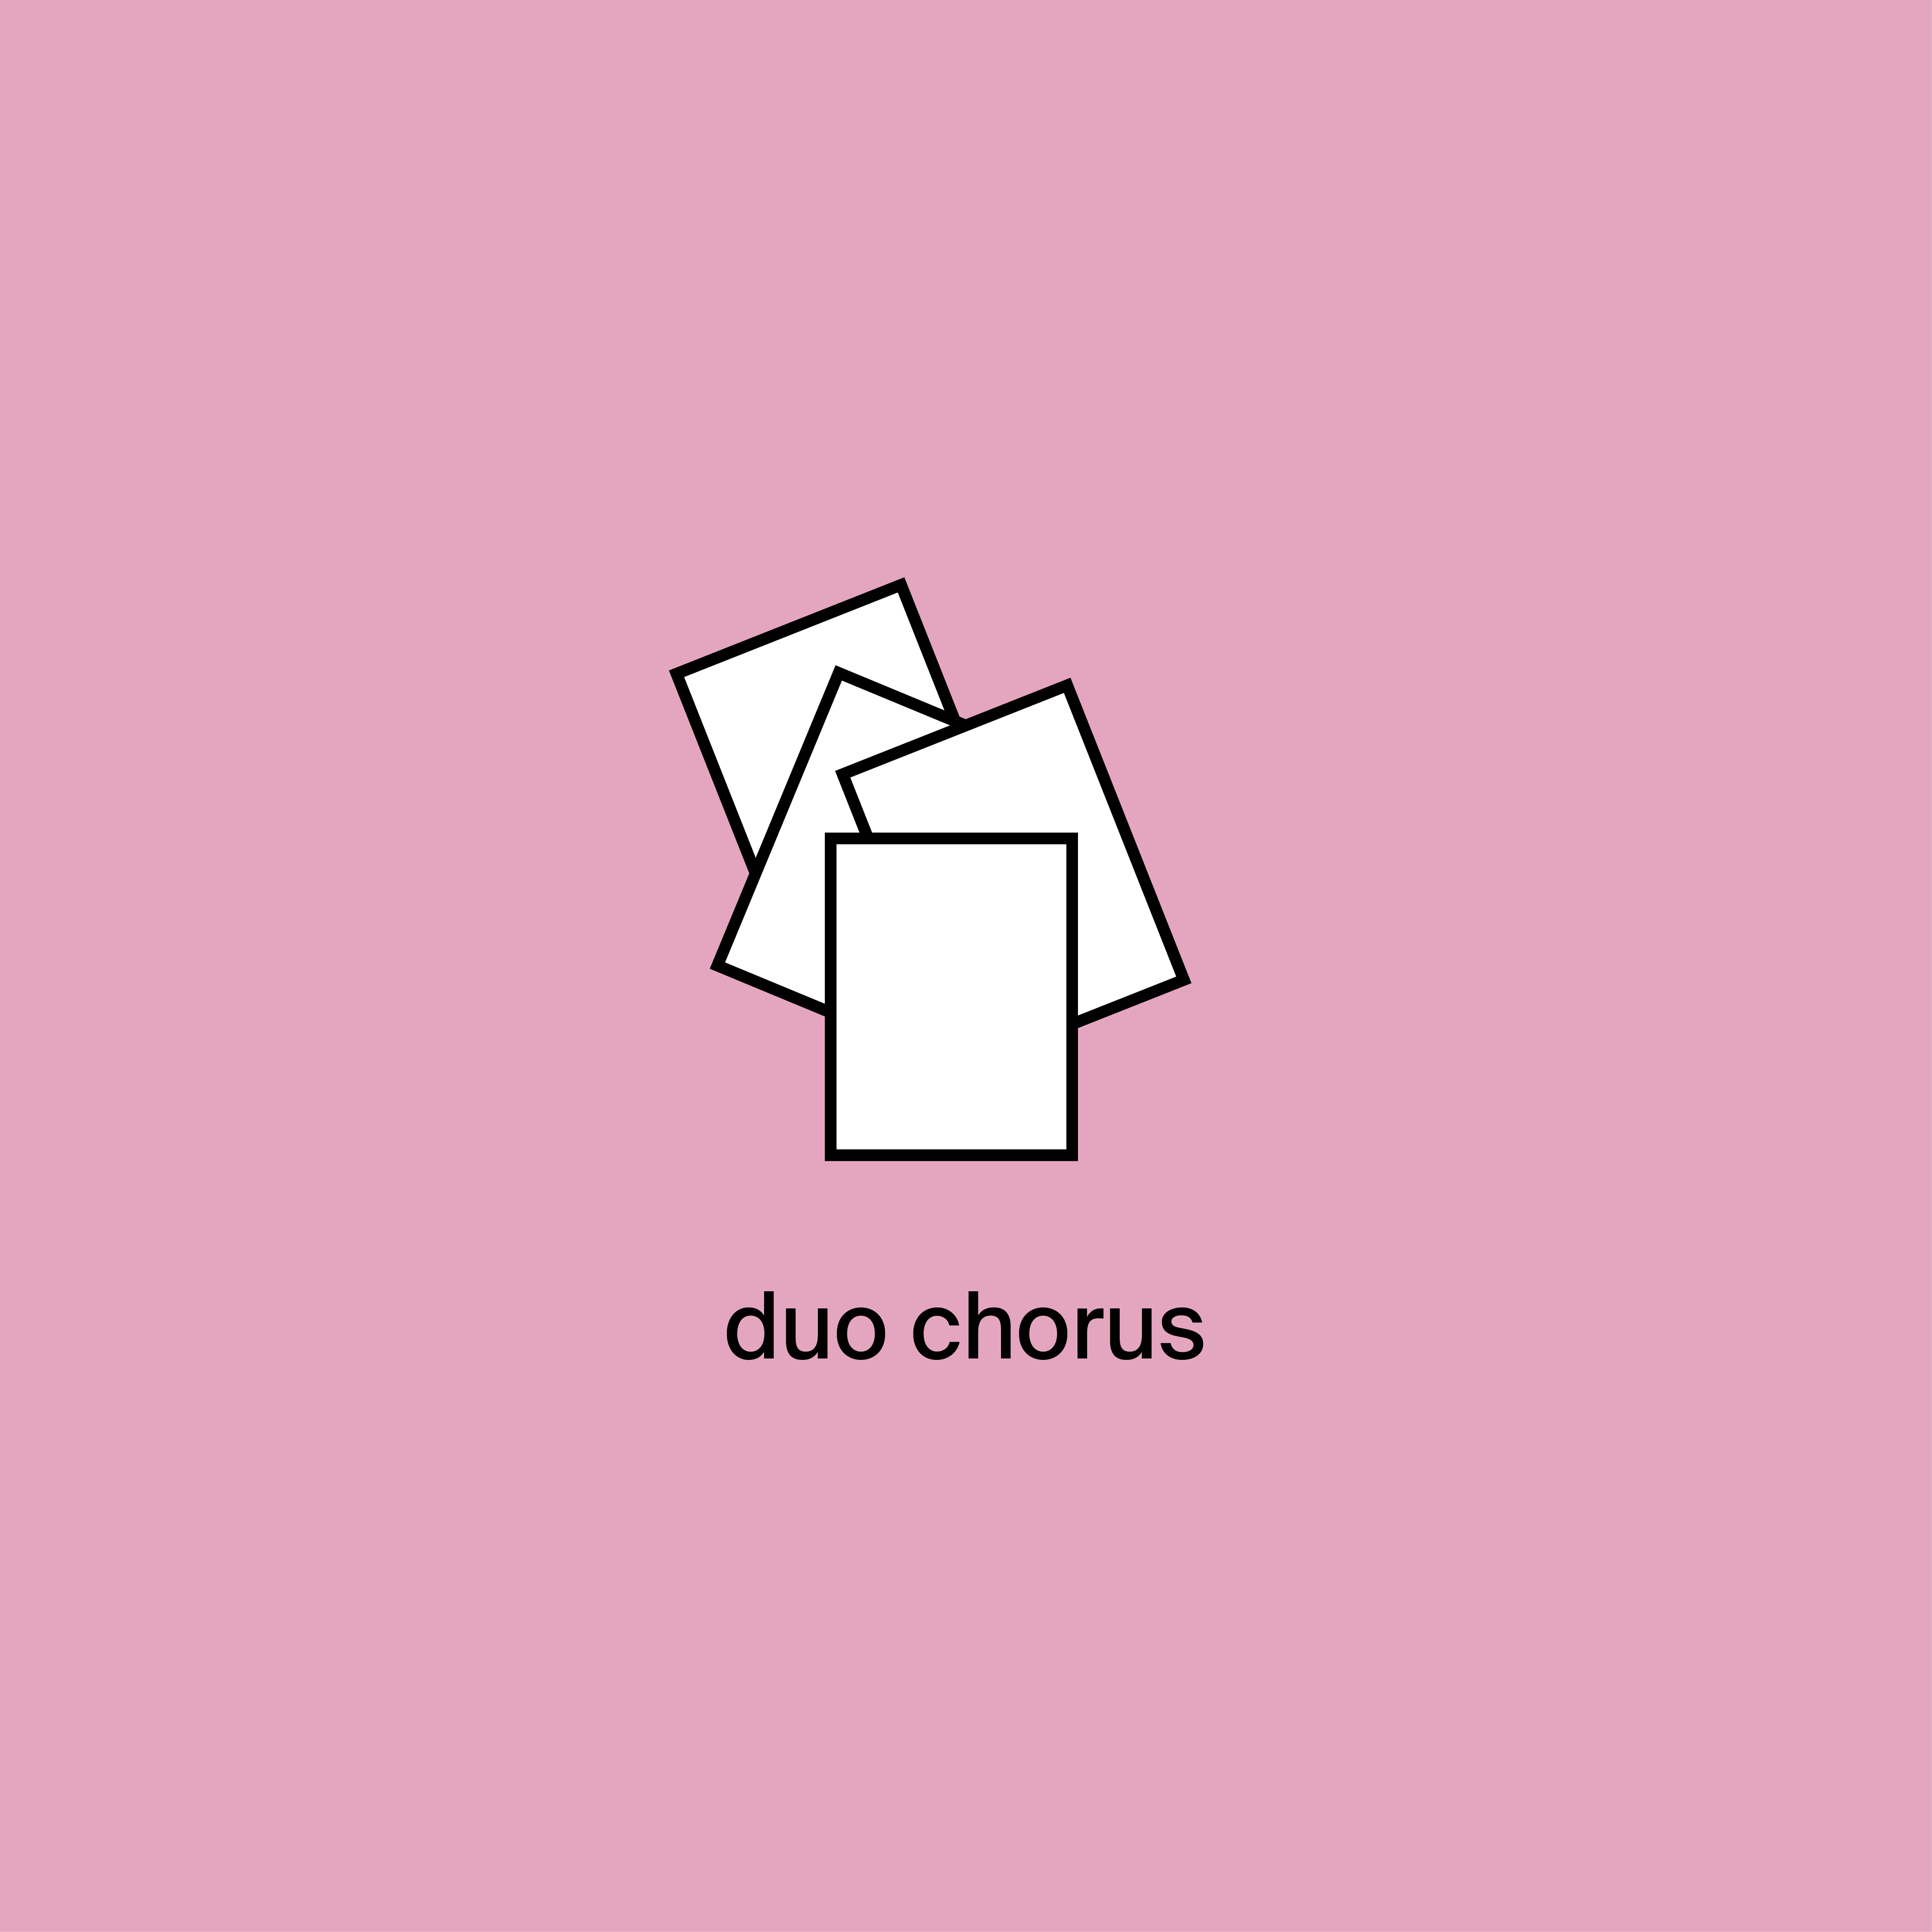 duos chorus rose